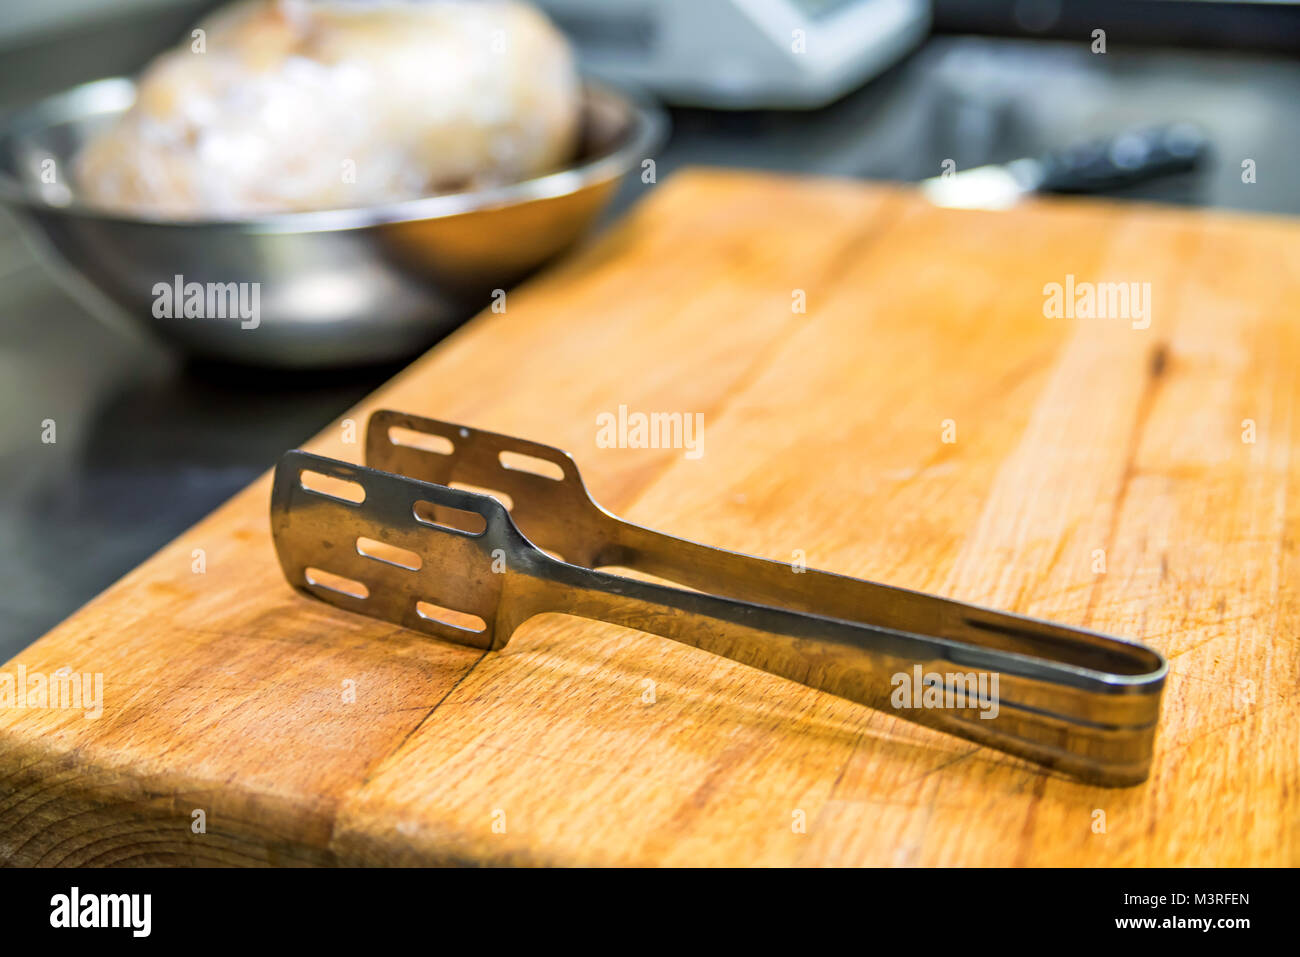 https://c8.alamy.com/comp/M3RFEN/metal-kitchen-thongs-on-wooden-board-M3RFEN.jpg